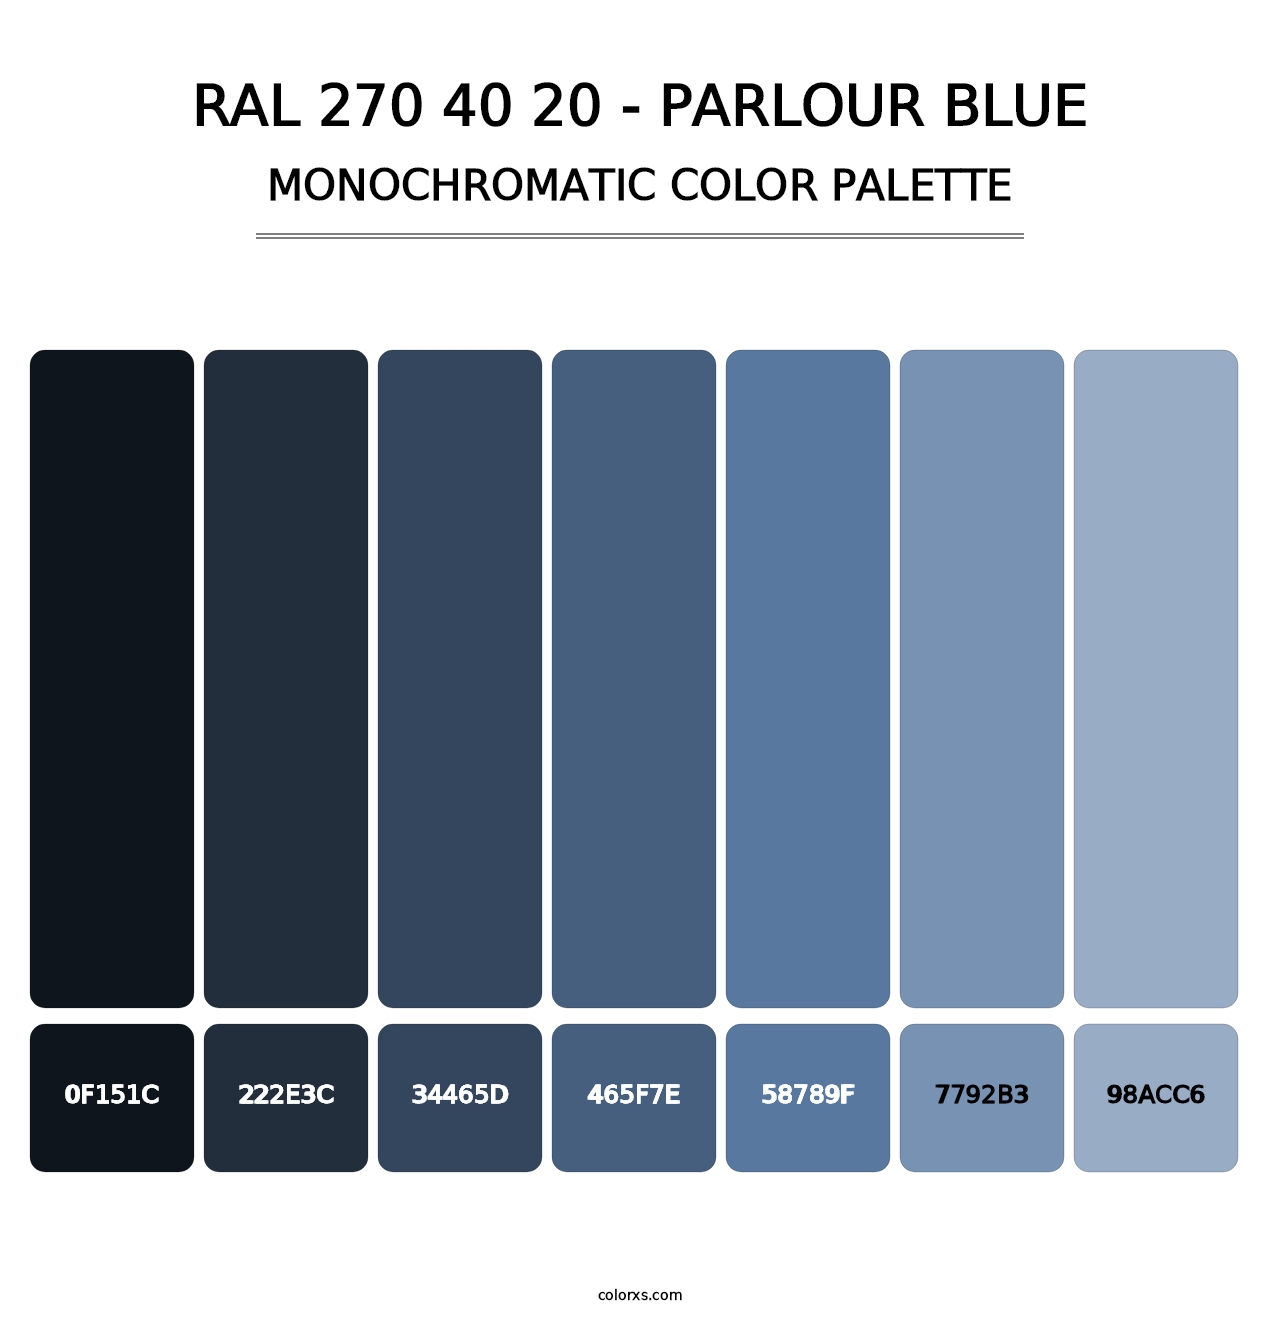 RAL 270 40 20 - Parlour Blue - Monochromatic Color Palette